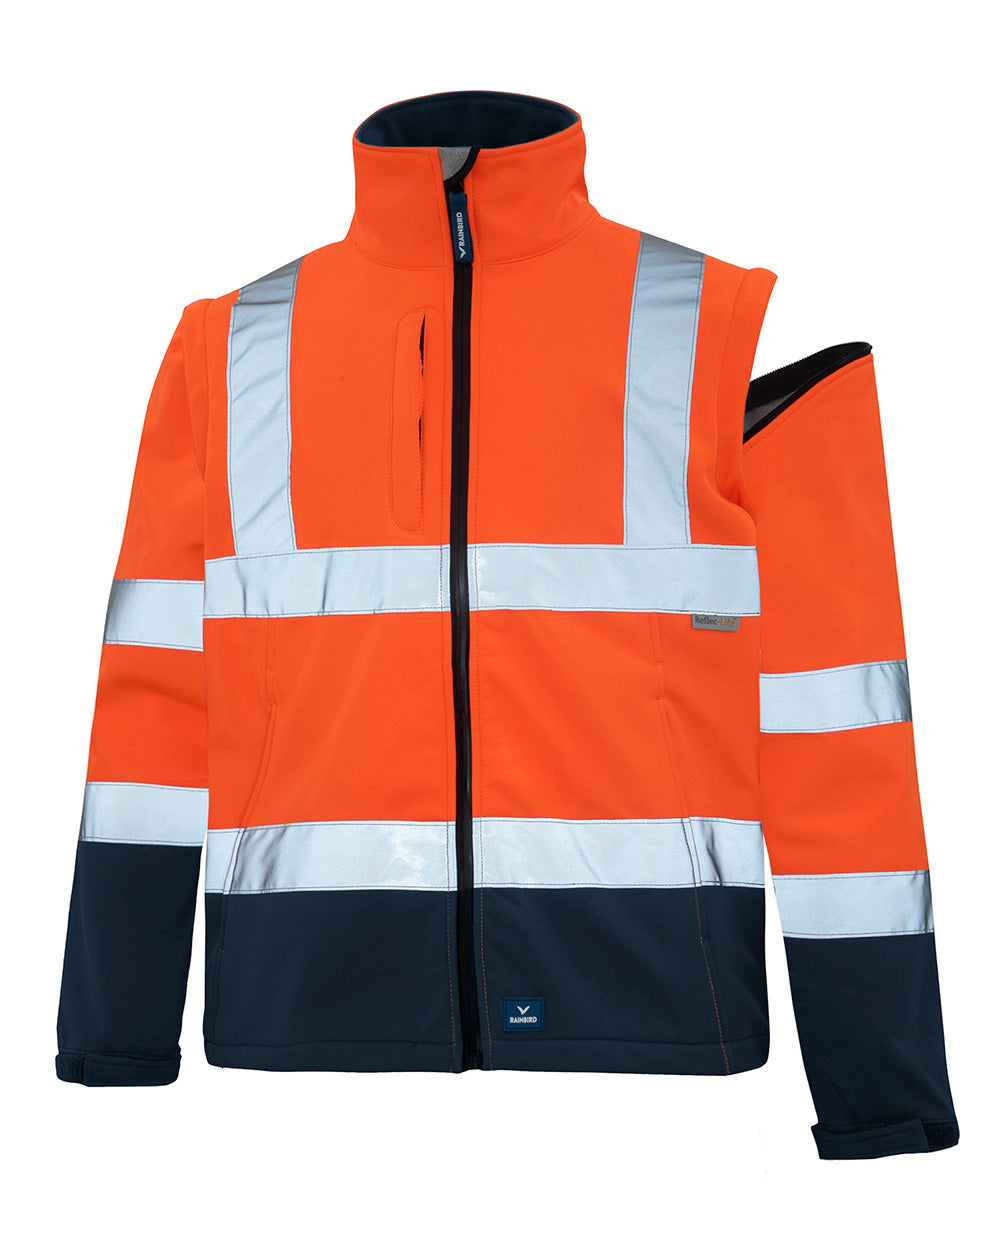 Landy Softshell Jacket in Fluoro Orange & Navy